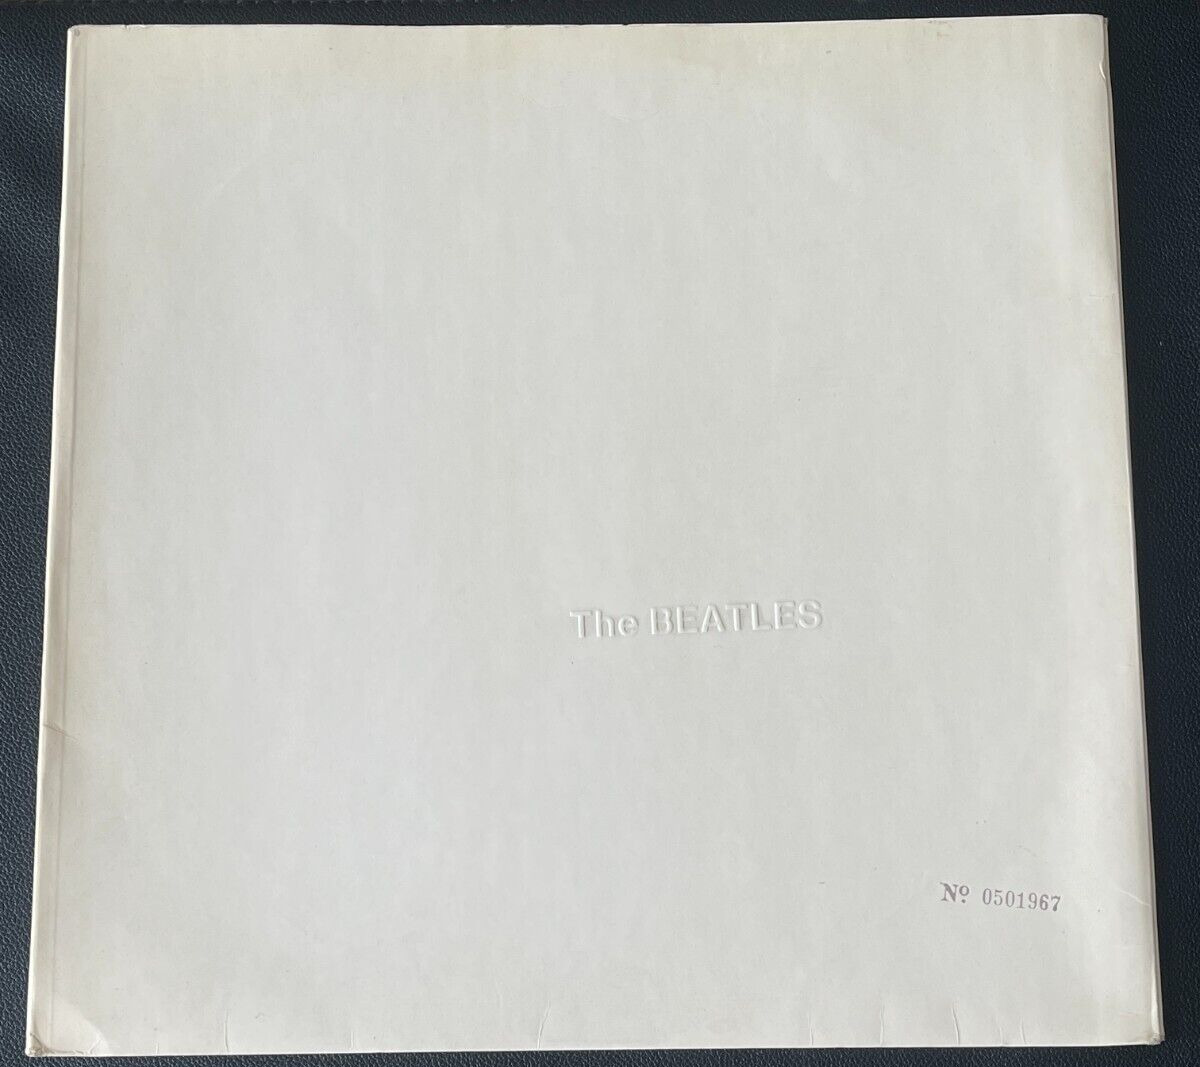 White Album * The Beatles * Stereo * UK 1st press * Top Loader * VG + or better